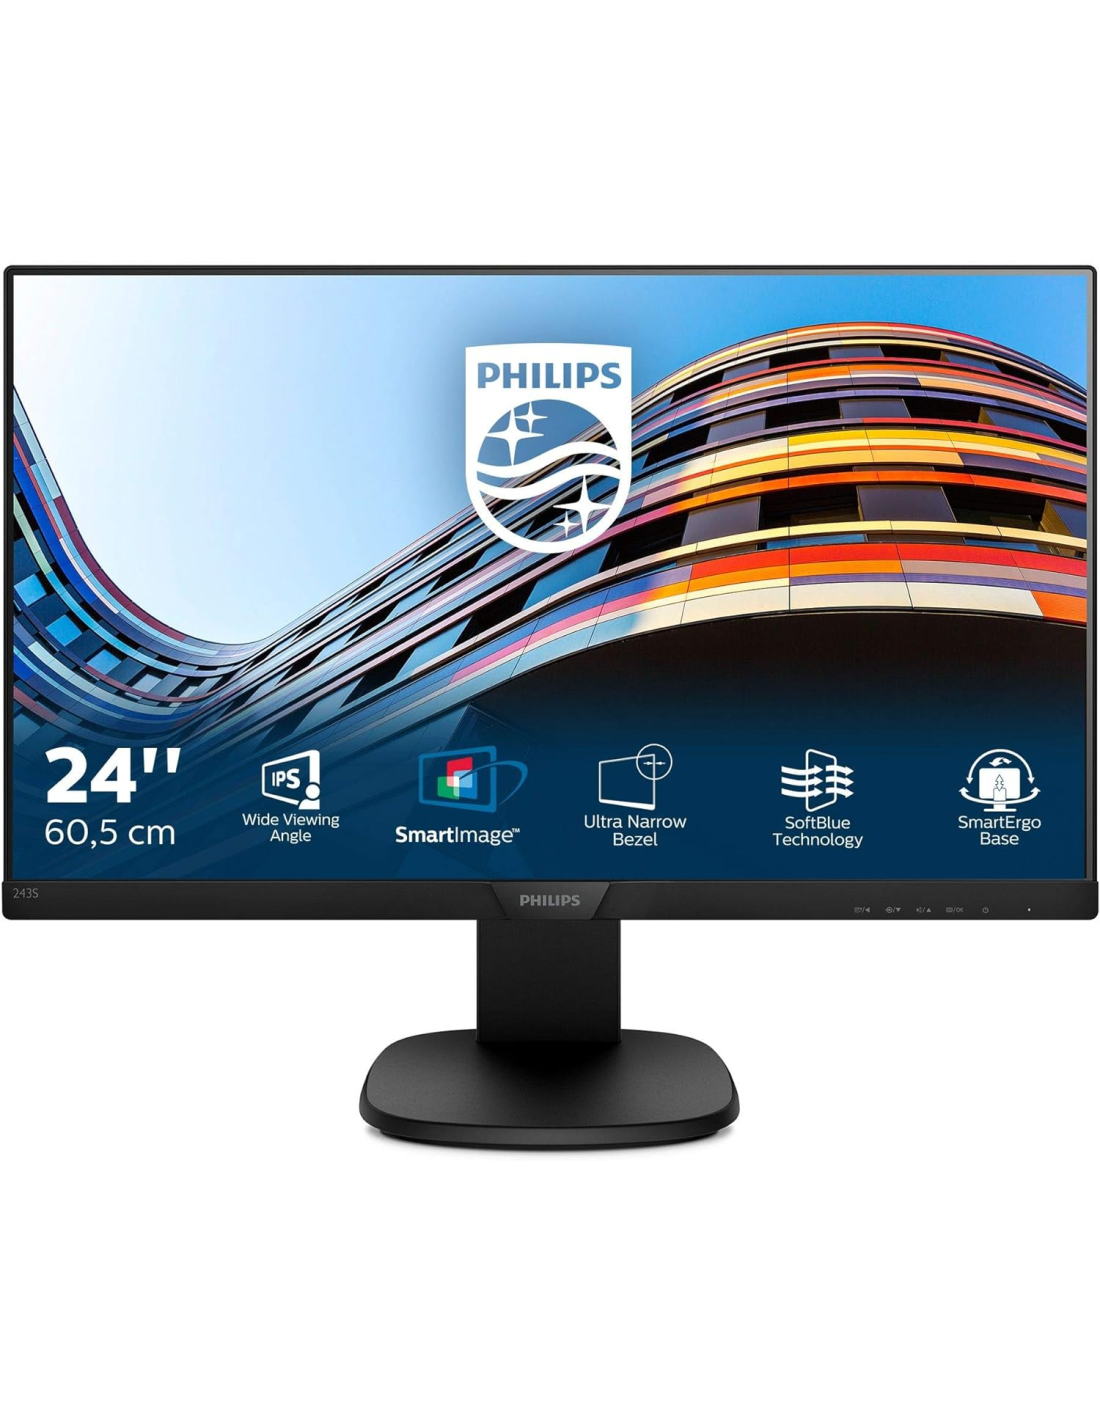 Monitor Phillips 243S7E de 24¨ con HDMI / VGA